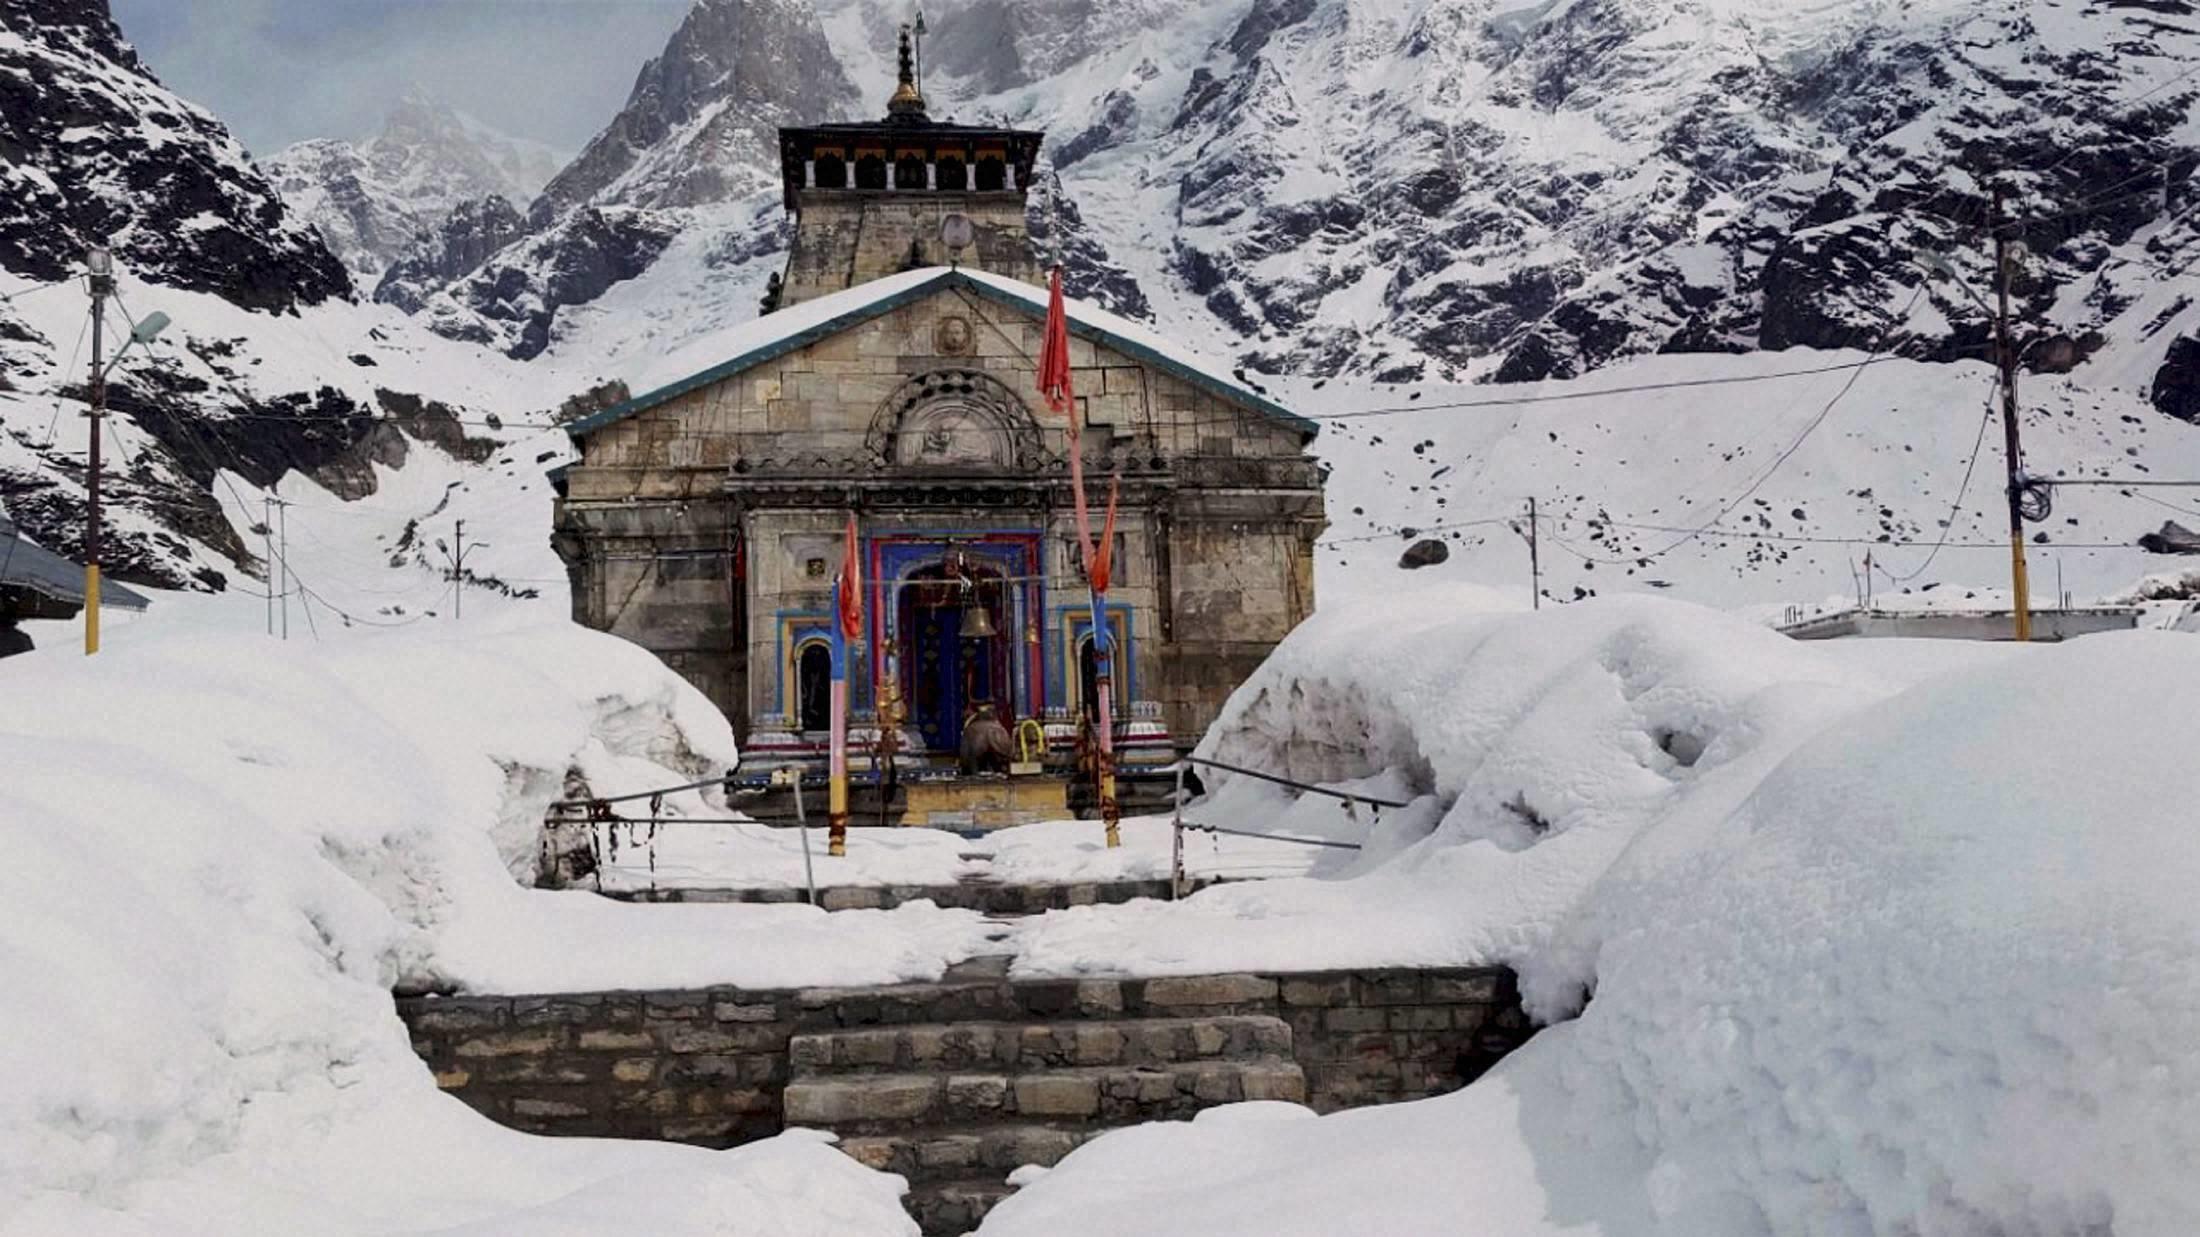 केदारेश्वर ज्योतिर्लिंग गिरिराज हिमालय की केदार नामक चोटी पर स्थित है। चारधामों में सबसे ऊंचाई पर बना केदारनाथ धाम तीन तरफ पहाड़ों से घिरा है। 